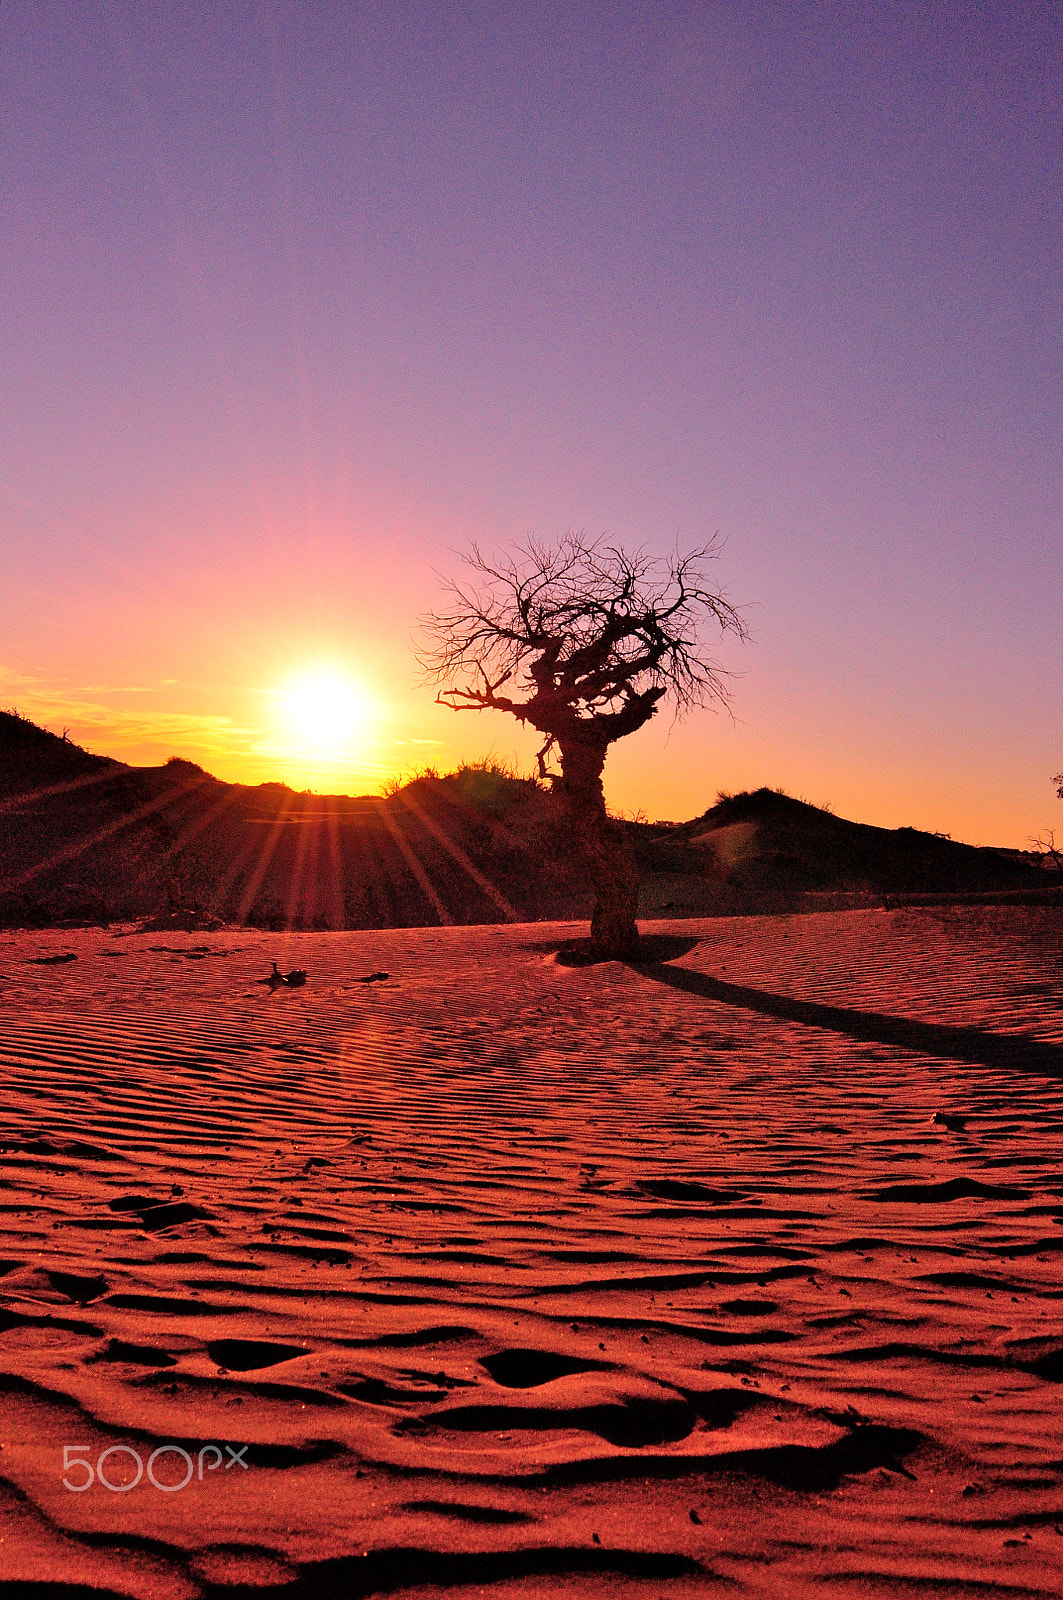 Nikon AF Nikkor 18-35mm F3.5-4.5D IF ED sample photo. Desert sunset photography